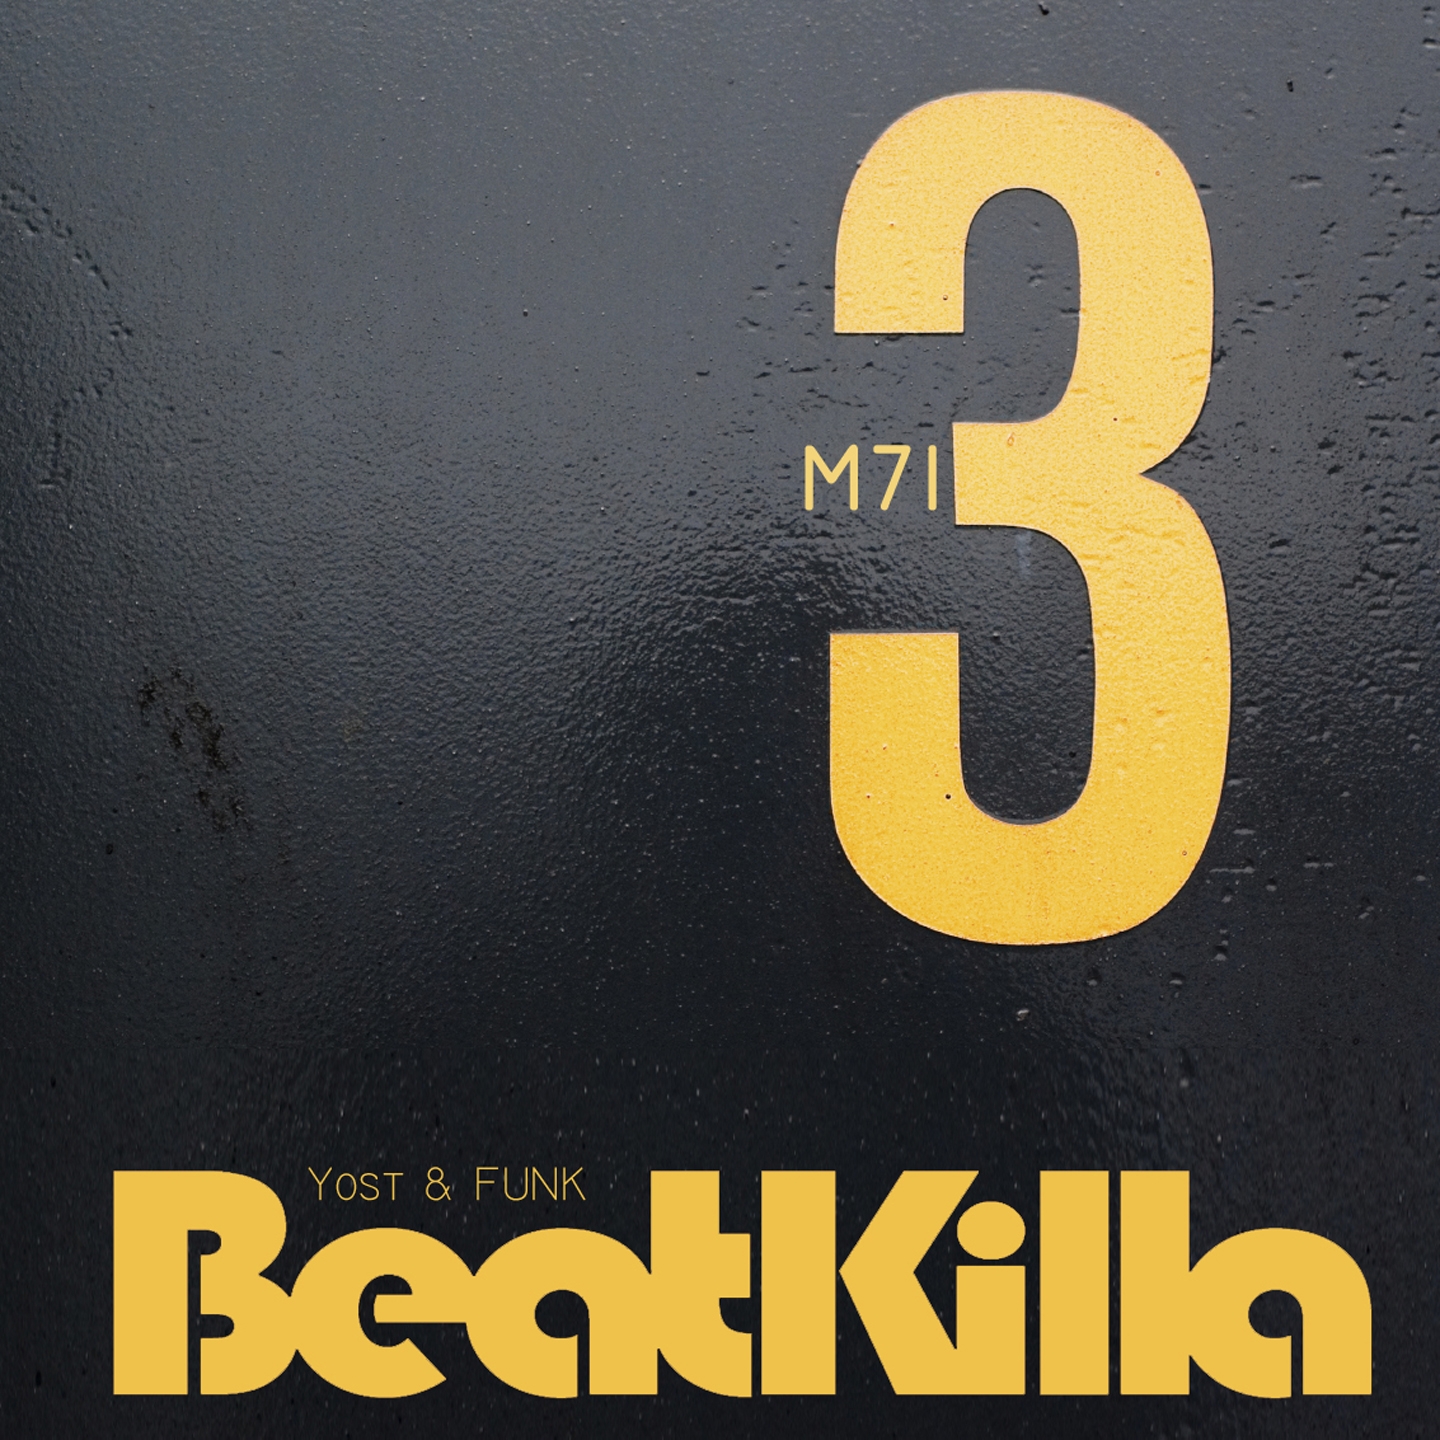 Beatkilla: M713